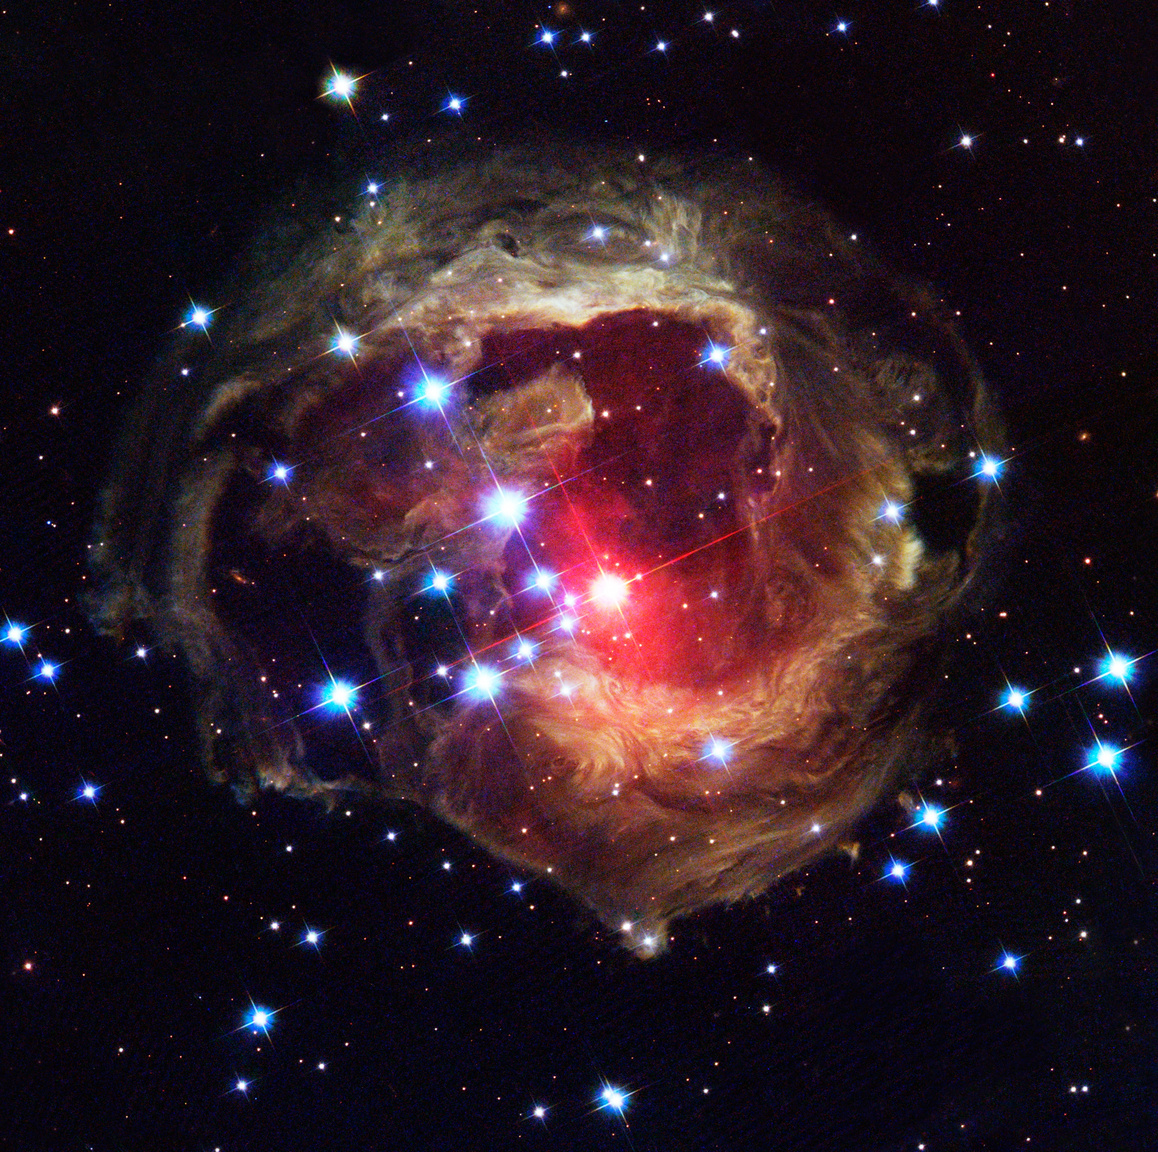 Csillagászok 2005-ben készítették ezt az állapotfotót az Egyszarvú csillagképben, a Napunktól 20 000 fényévre található V838 Monocerotis nevű vörös csillagról, ami 2002-ben váratlanul fölfénylett és hetekig világított a korábbinál sokkal fényesebben. A csillag fénye élénken megvilágítja a környezetében kavargó kozmikus porfelhőt – a csillagászok fényvisszhangnak nevezik ezt a jelenséget.